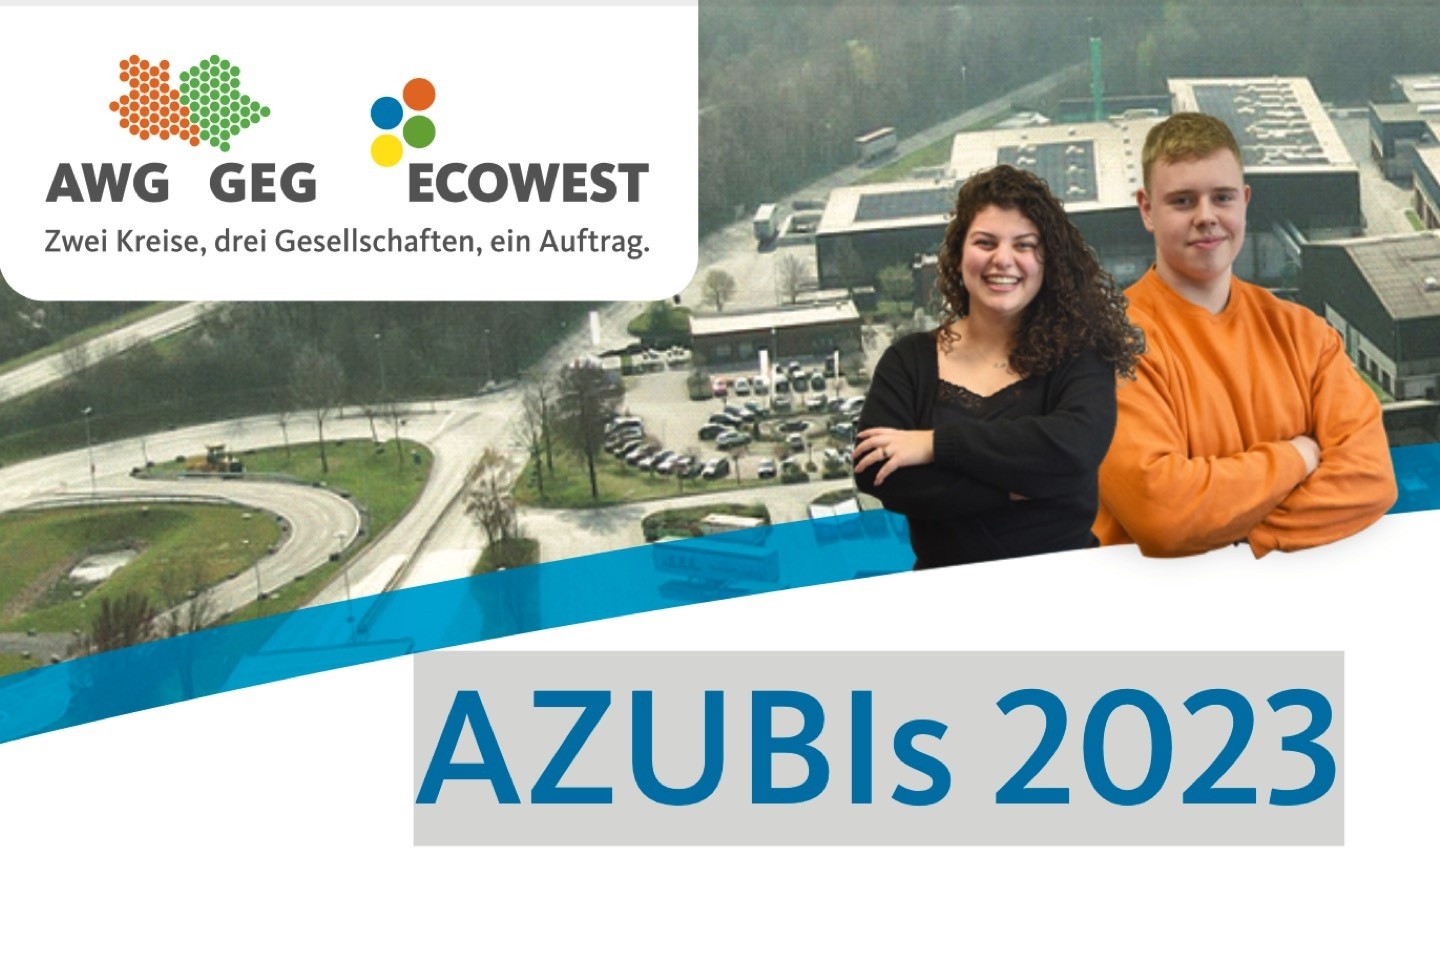 Eco West,Abfallwirtschaft,Kreis Warendorf,Ennigerloh,Ausbildung,Ausbildungsplatz,